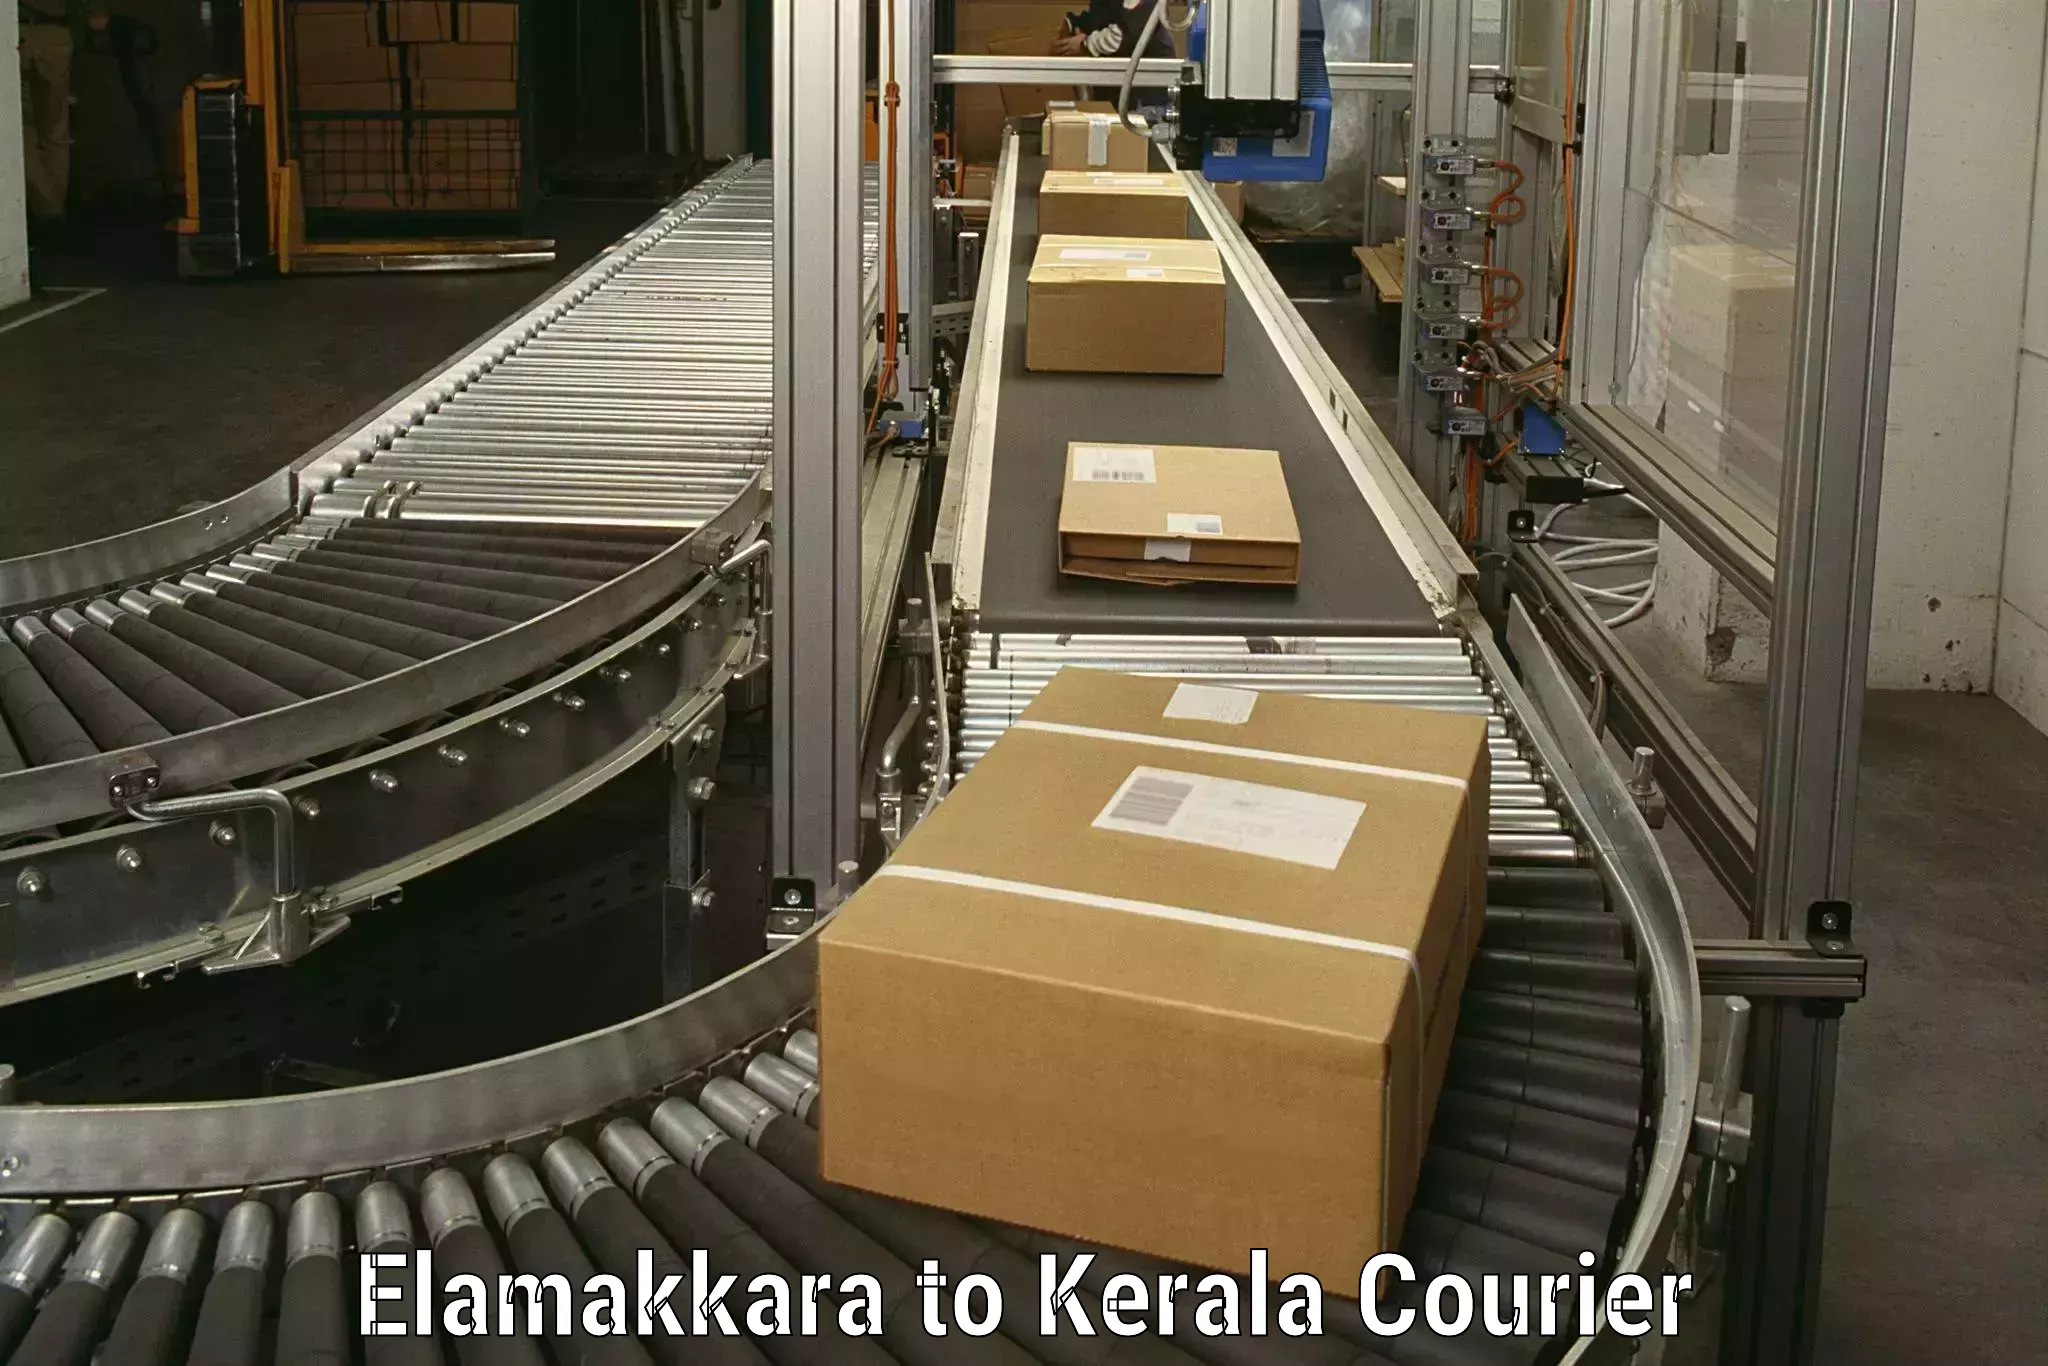 Professional moving company Elamakkara to Mundakayam